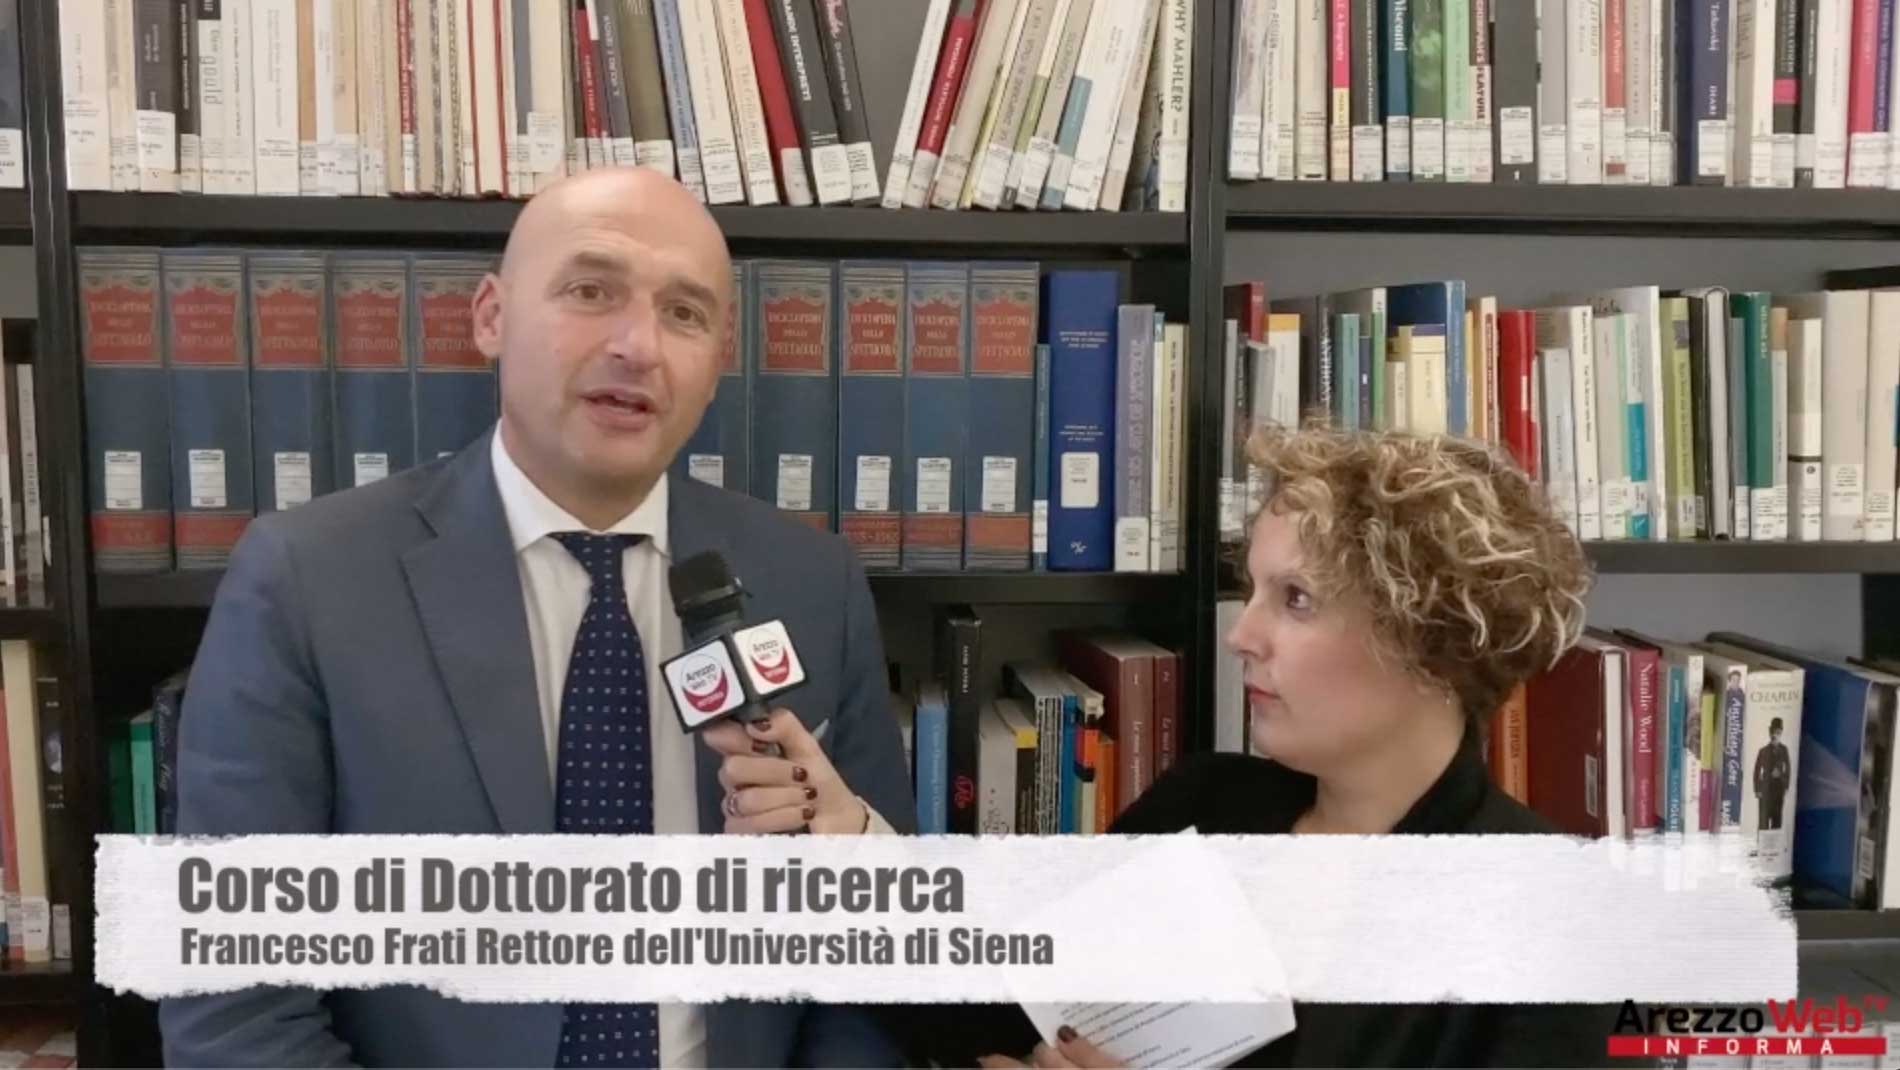 Corso di Dottorato di ricerca, intervista a Francesco Frati Rettore dell’Università di Siena e Michele Tiraboschi per Adapt